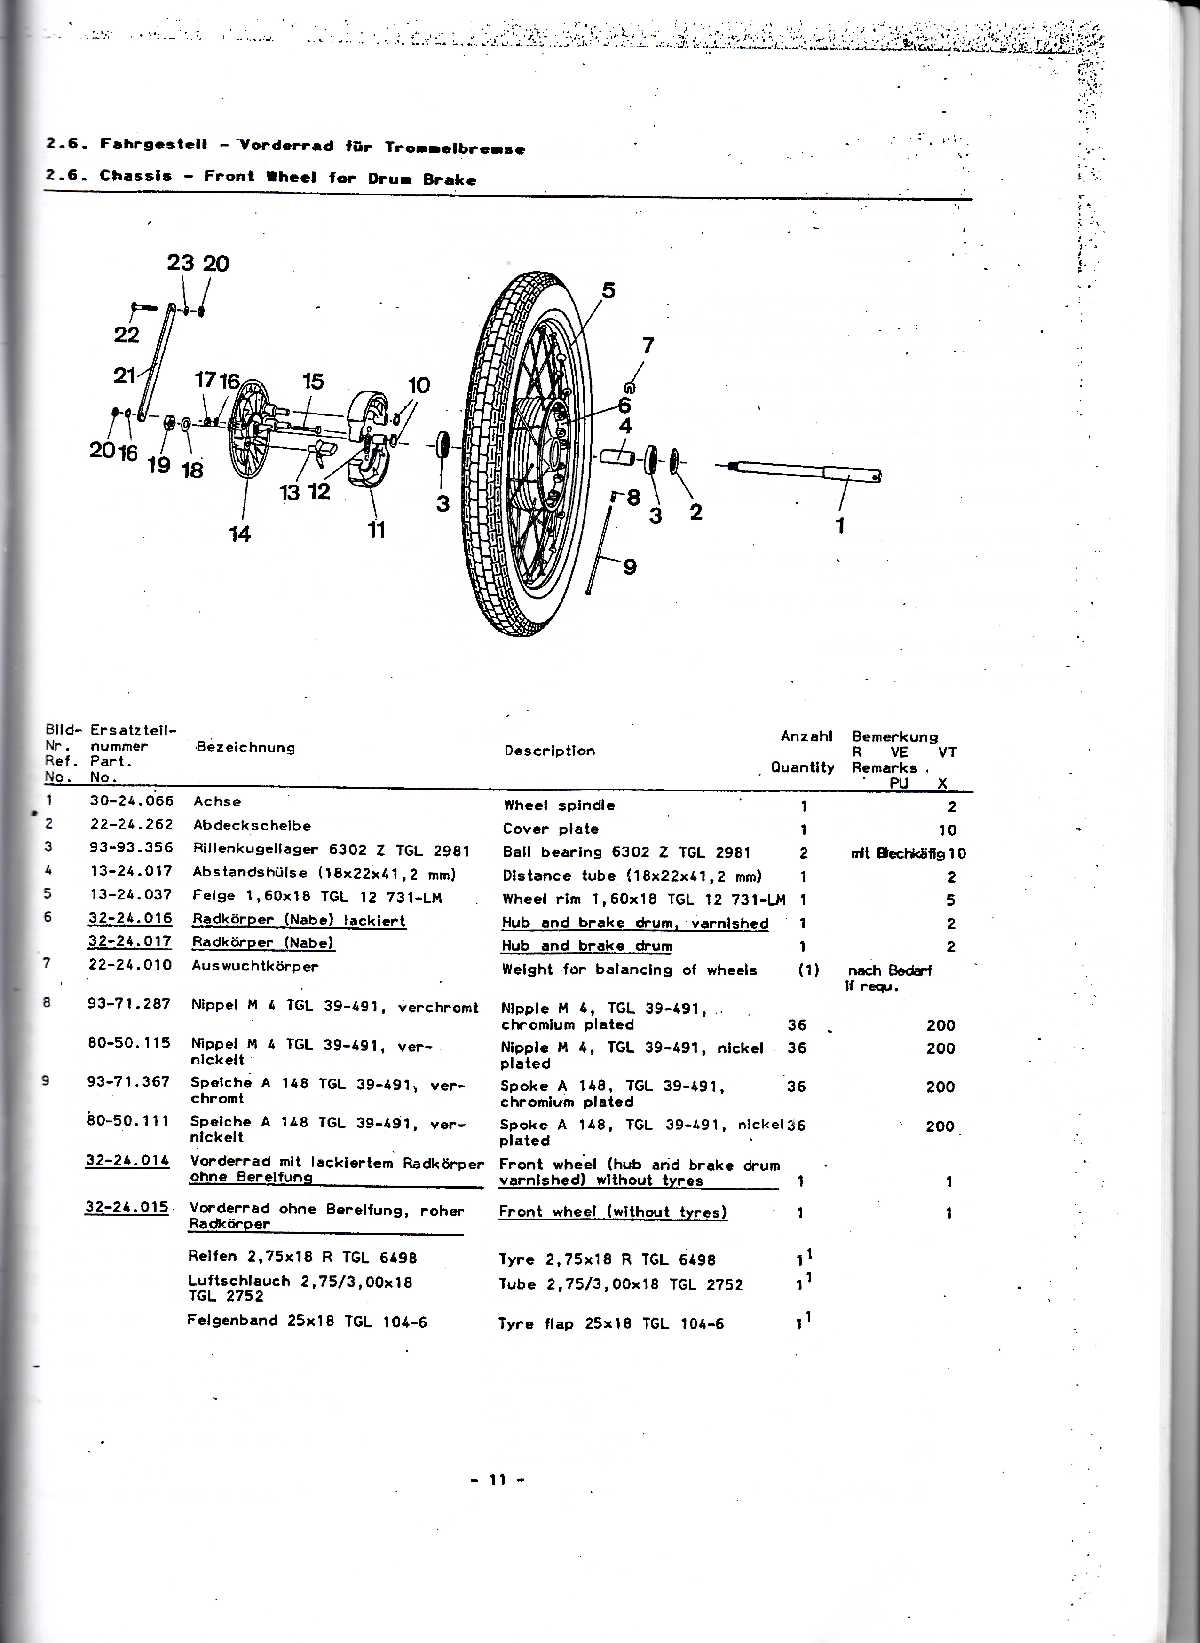 Katalog MZ 150 ETZ, MZ 125 ETZ - 2.6. Fahrgasteil - Vorderrad für Trommelbremse